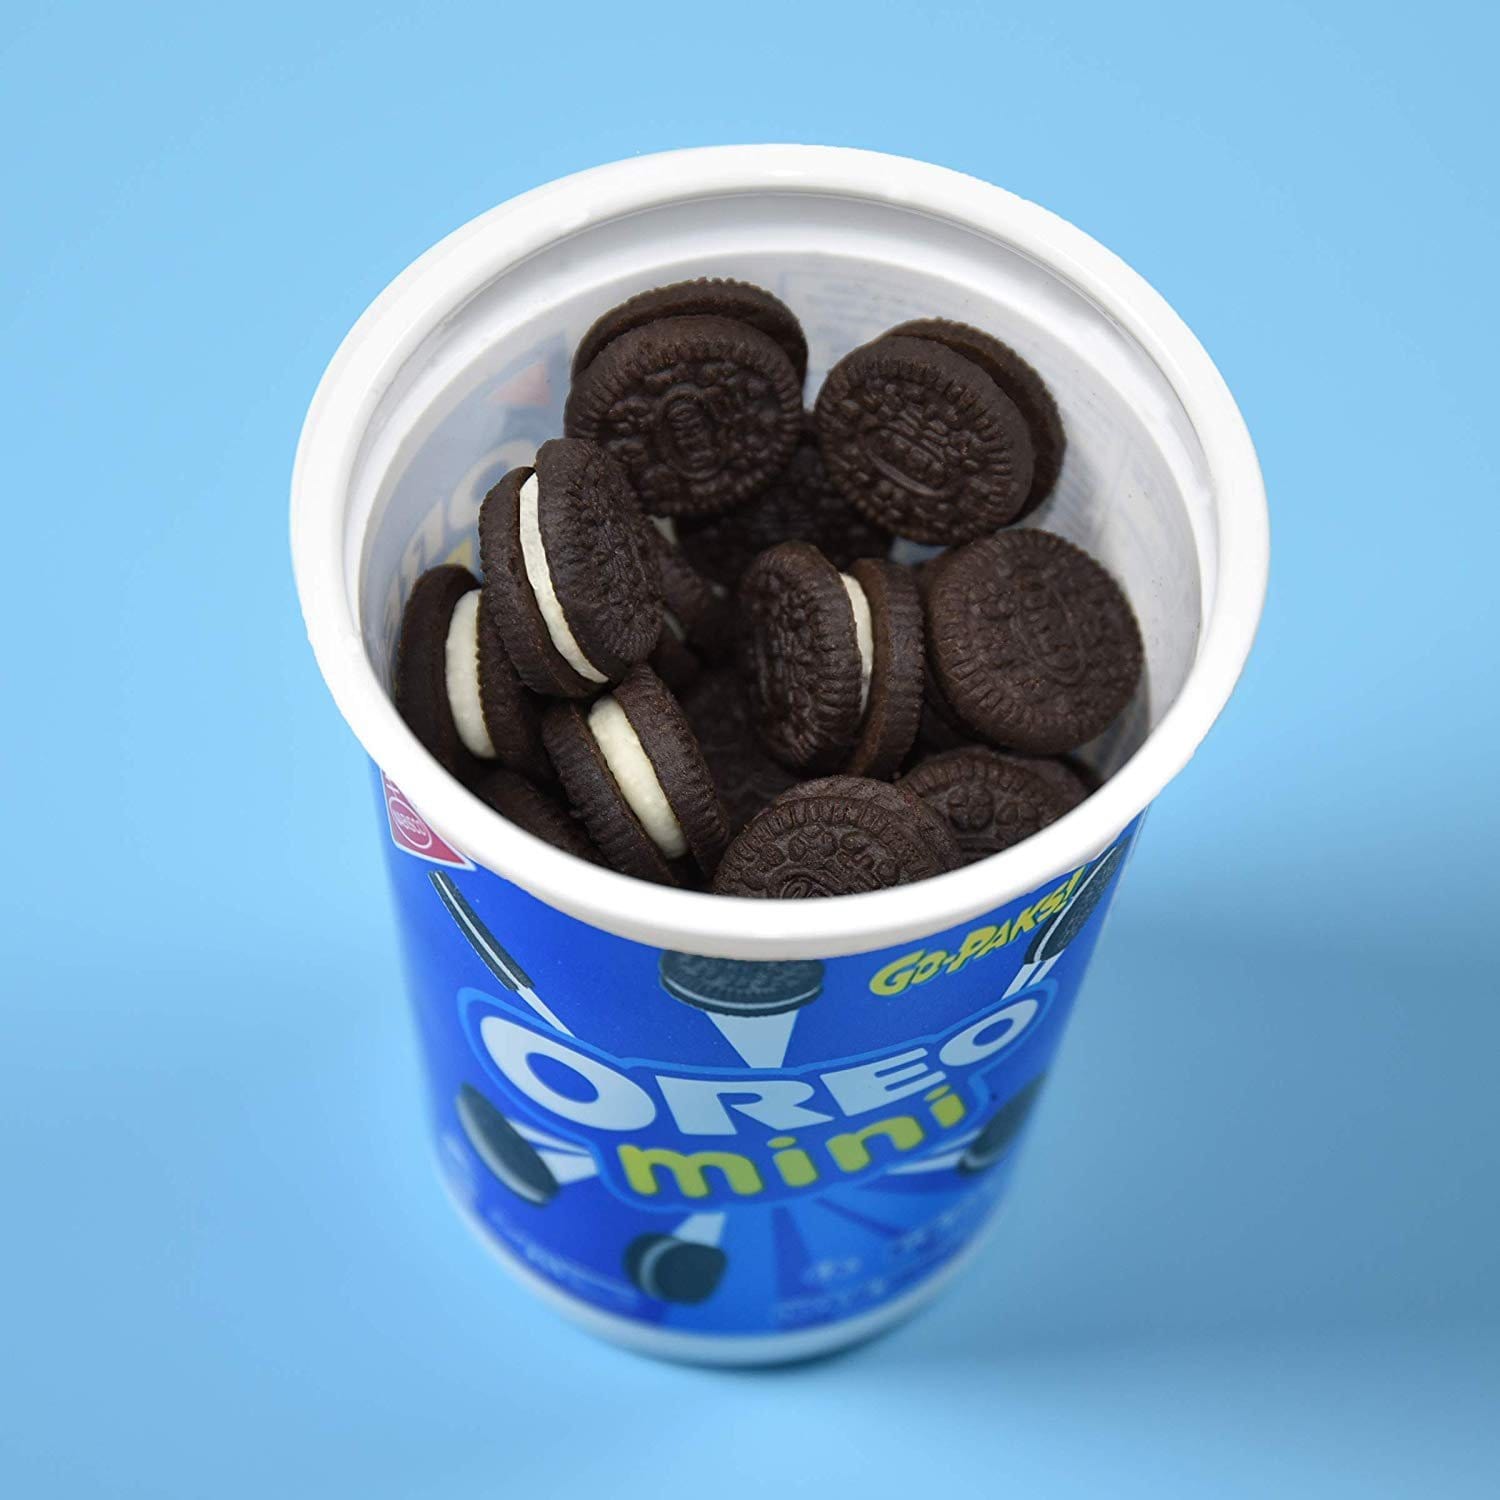 Un emballage blanc et bleu vu d’en haut, il est ouvert et il y a plein de biscuits noirs avec de la crème blanche à l’intérieur, le tout sur une table bleu